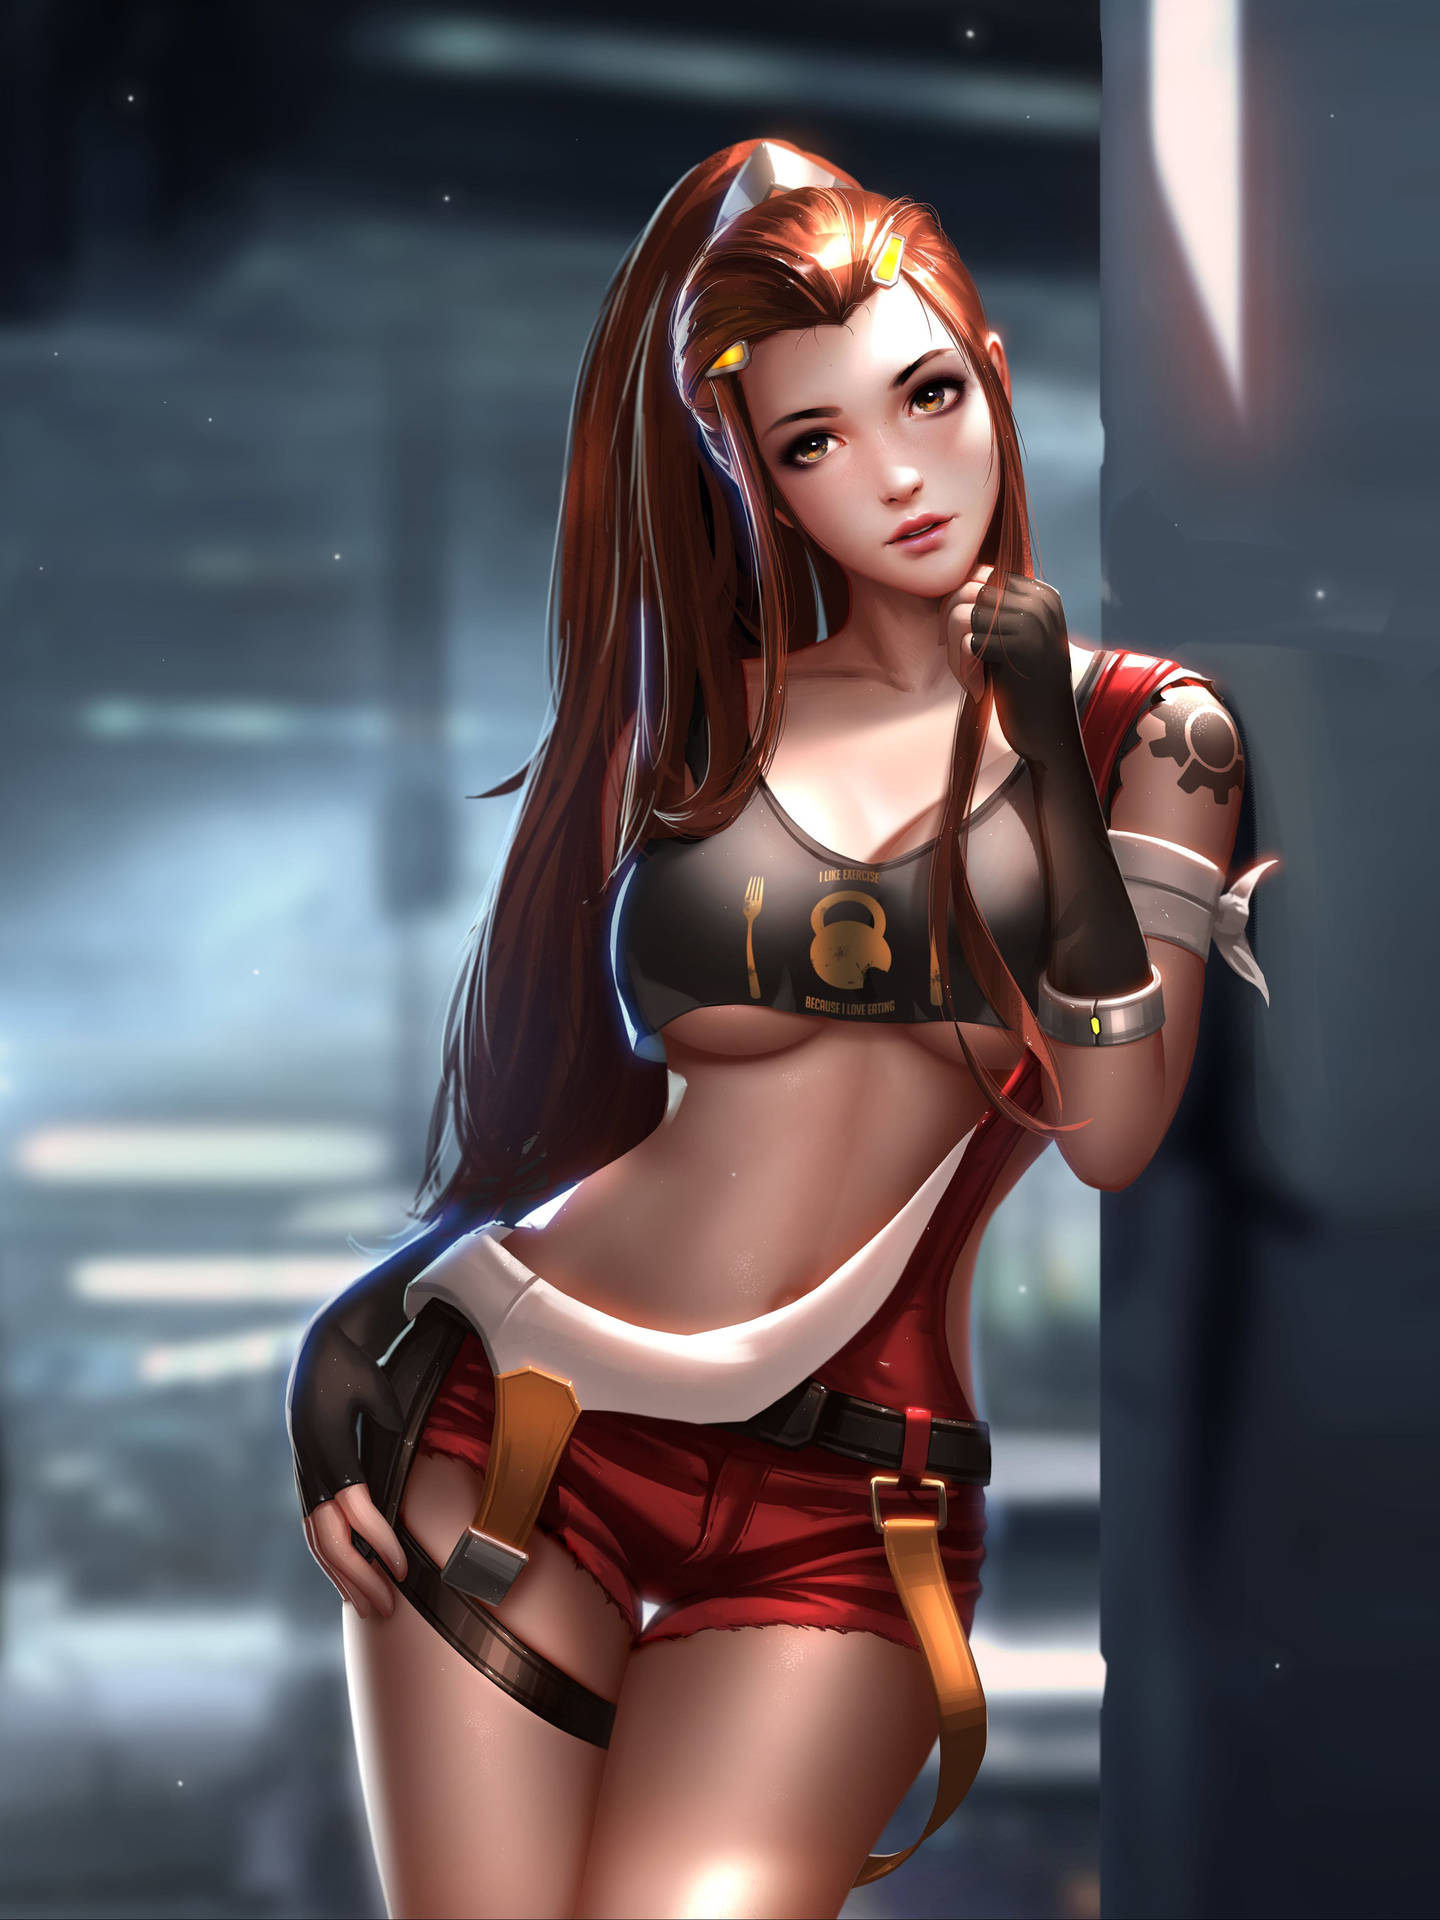 Sexy Mechanic Anime Girl Background